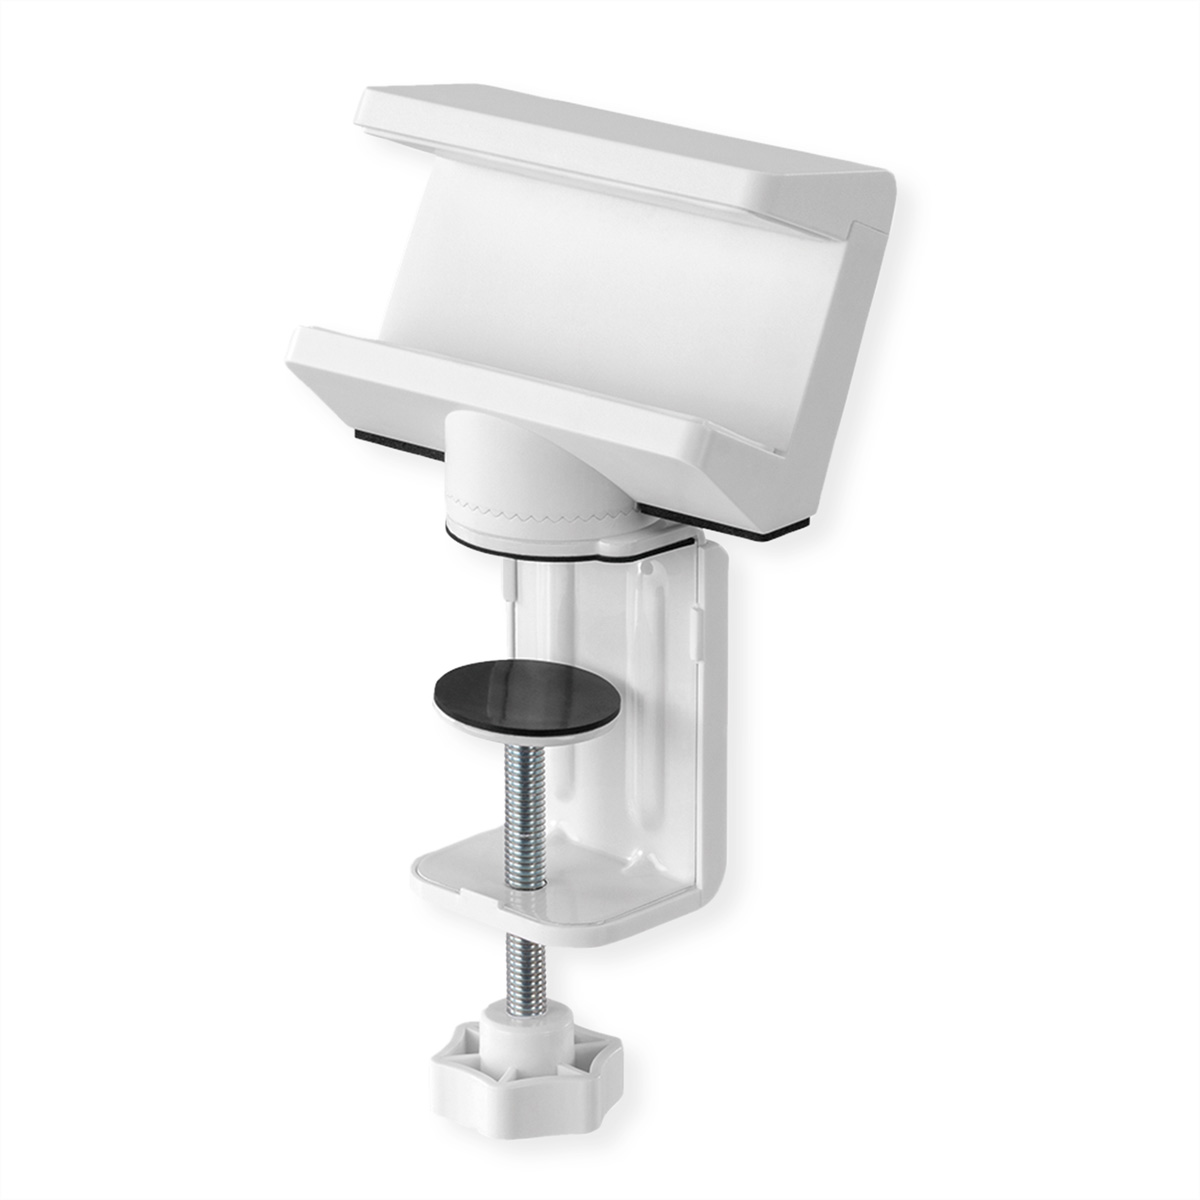 VALUE Tischklemme für Steckdosenleiste, weiß drehbar Kabelmanagement, 360°